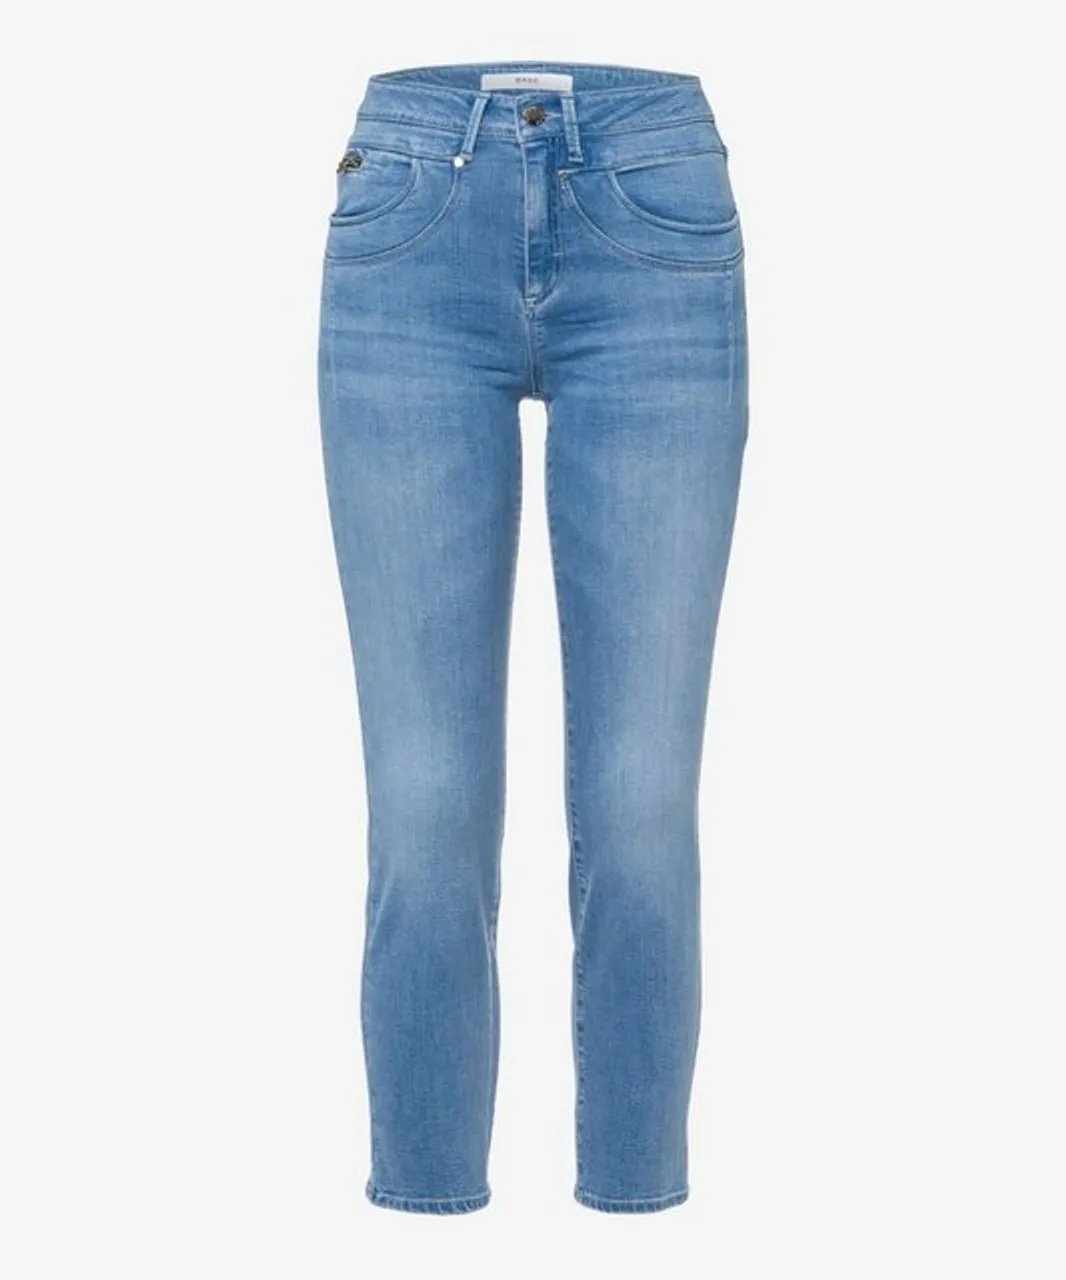 Brax 5-Pocket-Jeans - Preise vergleichen